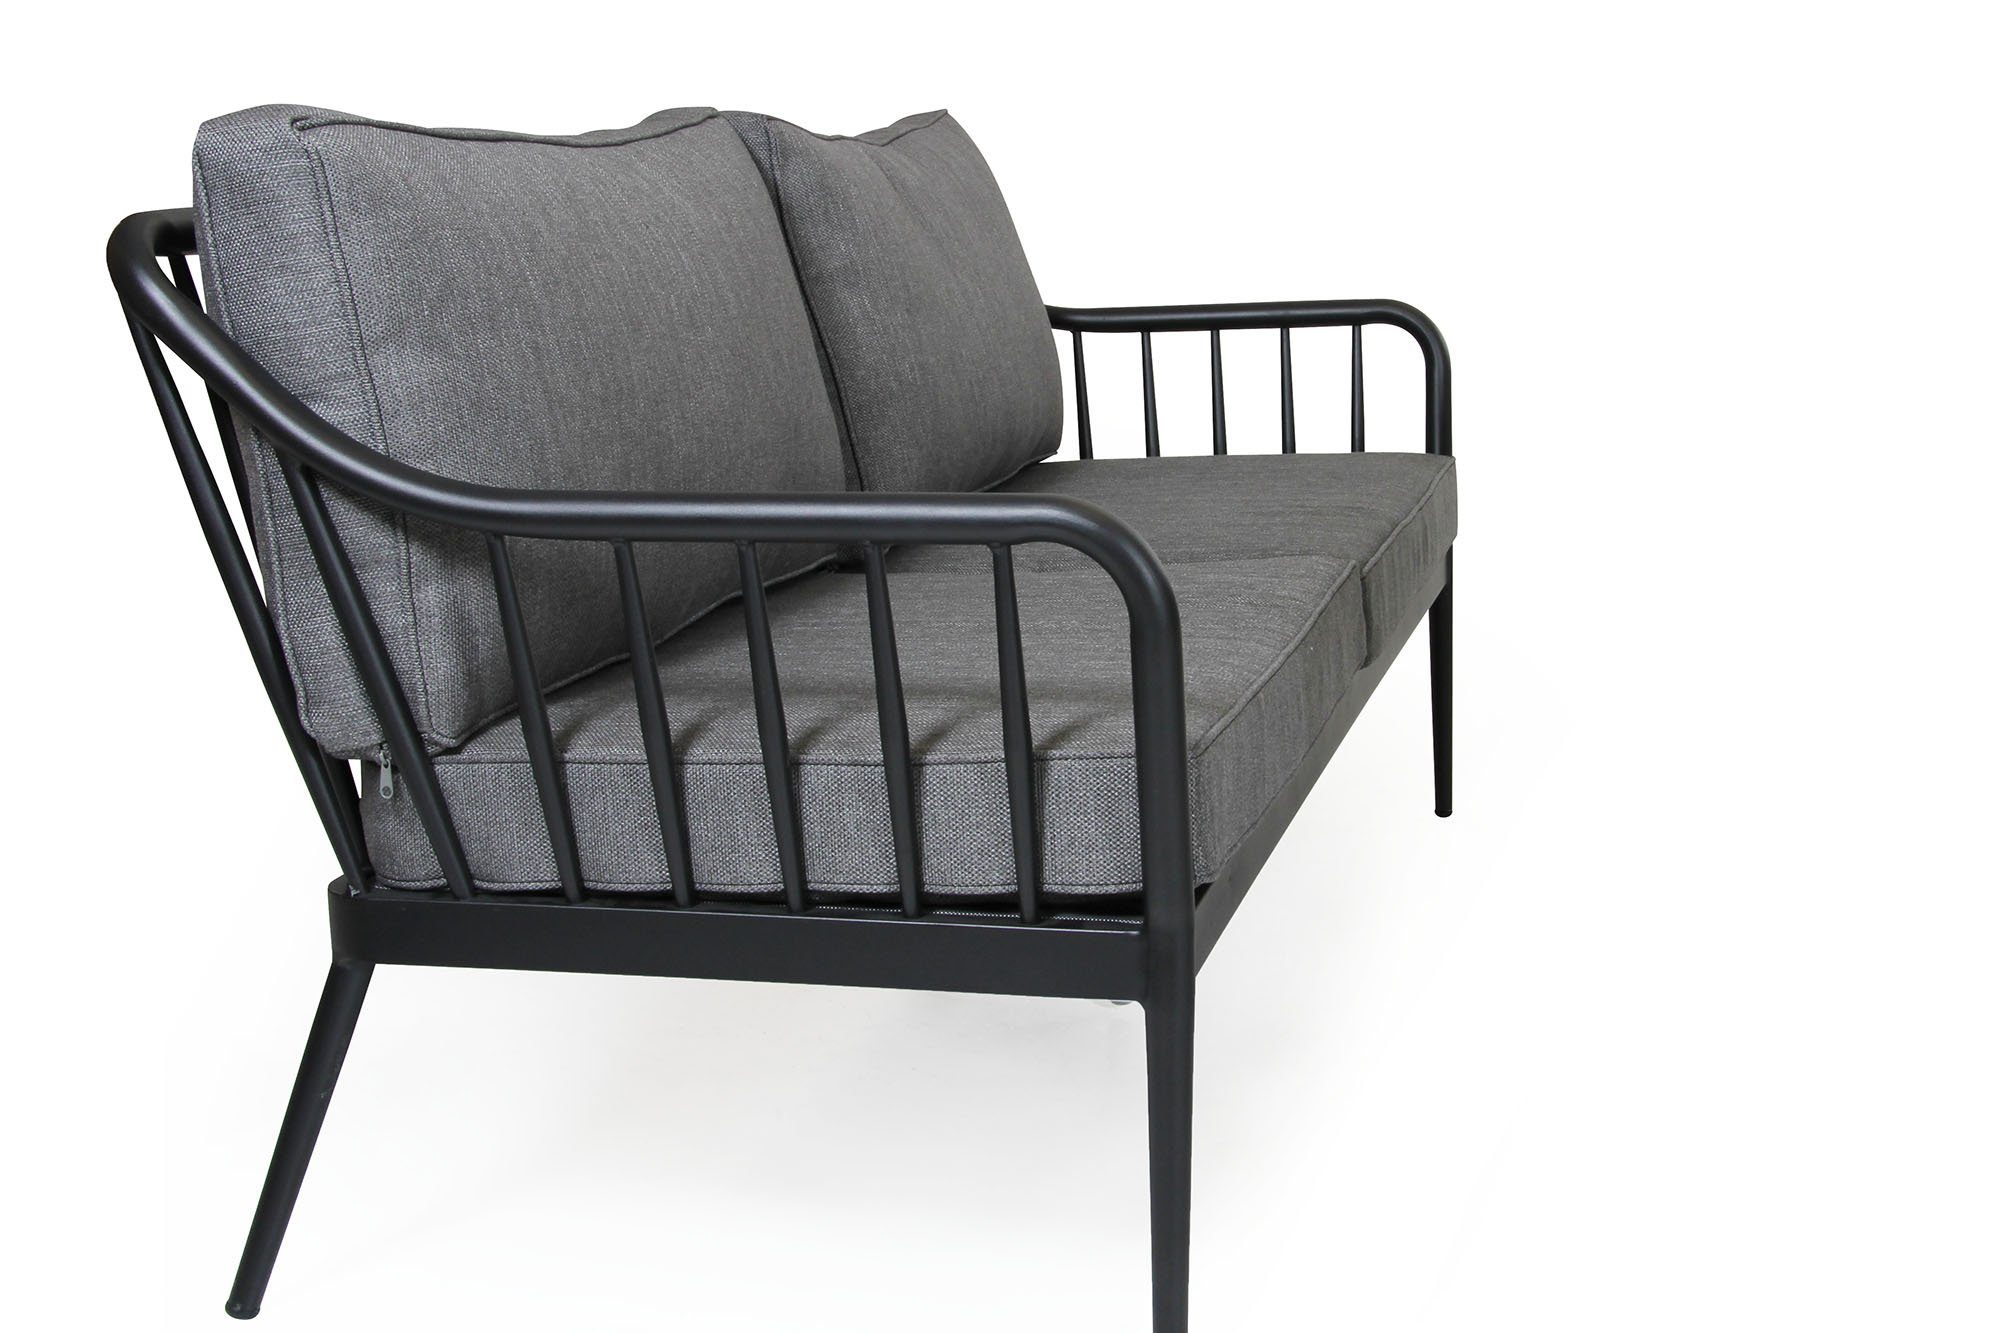 Coleville 3-sits soffa, en utemöbel tillverkad i aluminium med dynor i vädertåligt grått olefintyg från Brafab.